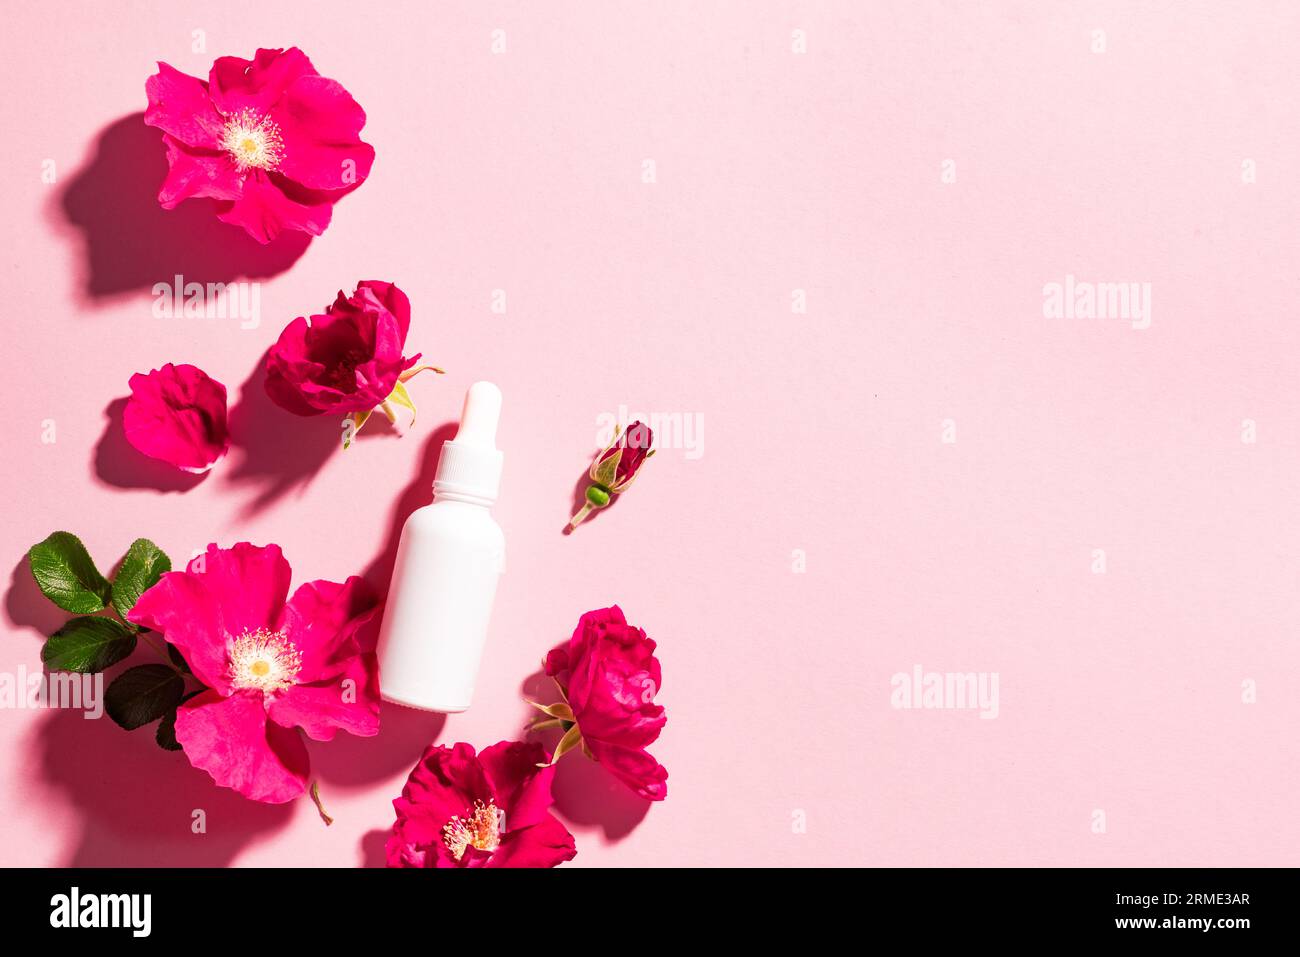 Flacon de sérum cosmétique blanc avec compte-gouttes, fleurs roses sauvages sur fond rose, espace copie. Cosmétiques biologiques naturels, produit de soin de la peau à base de plantes de beauté Banque D'Images